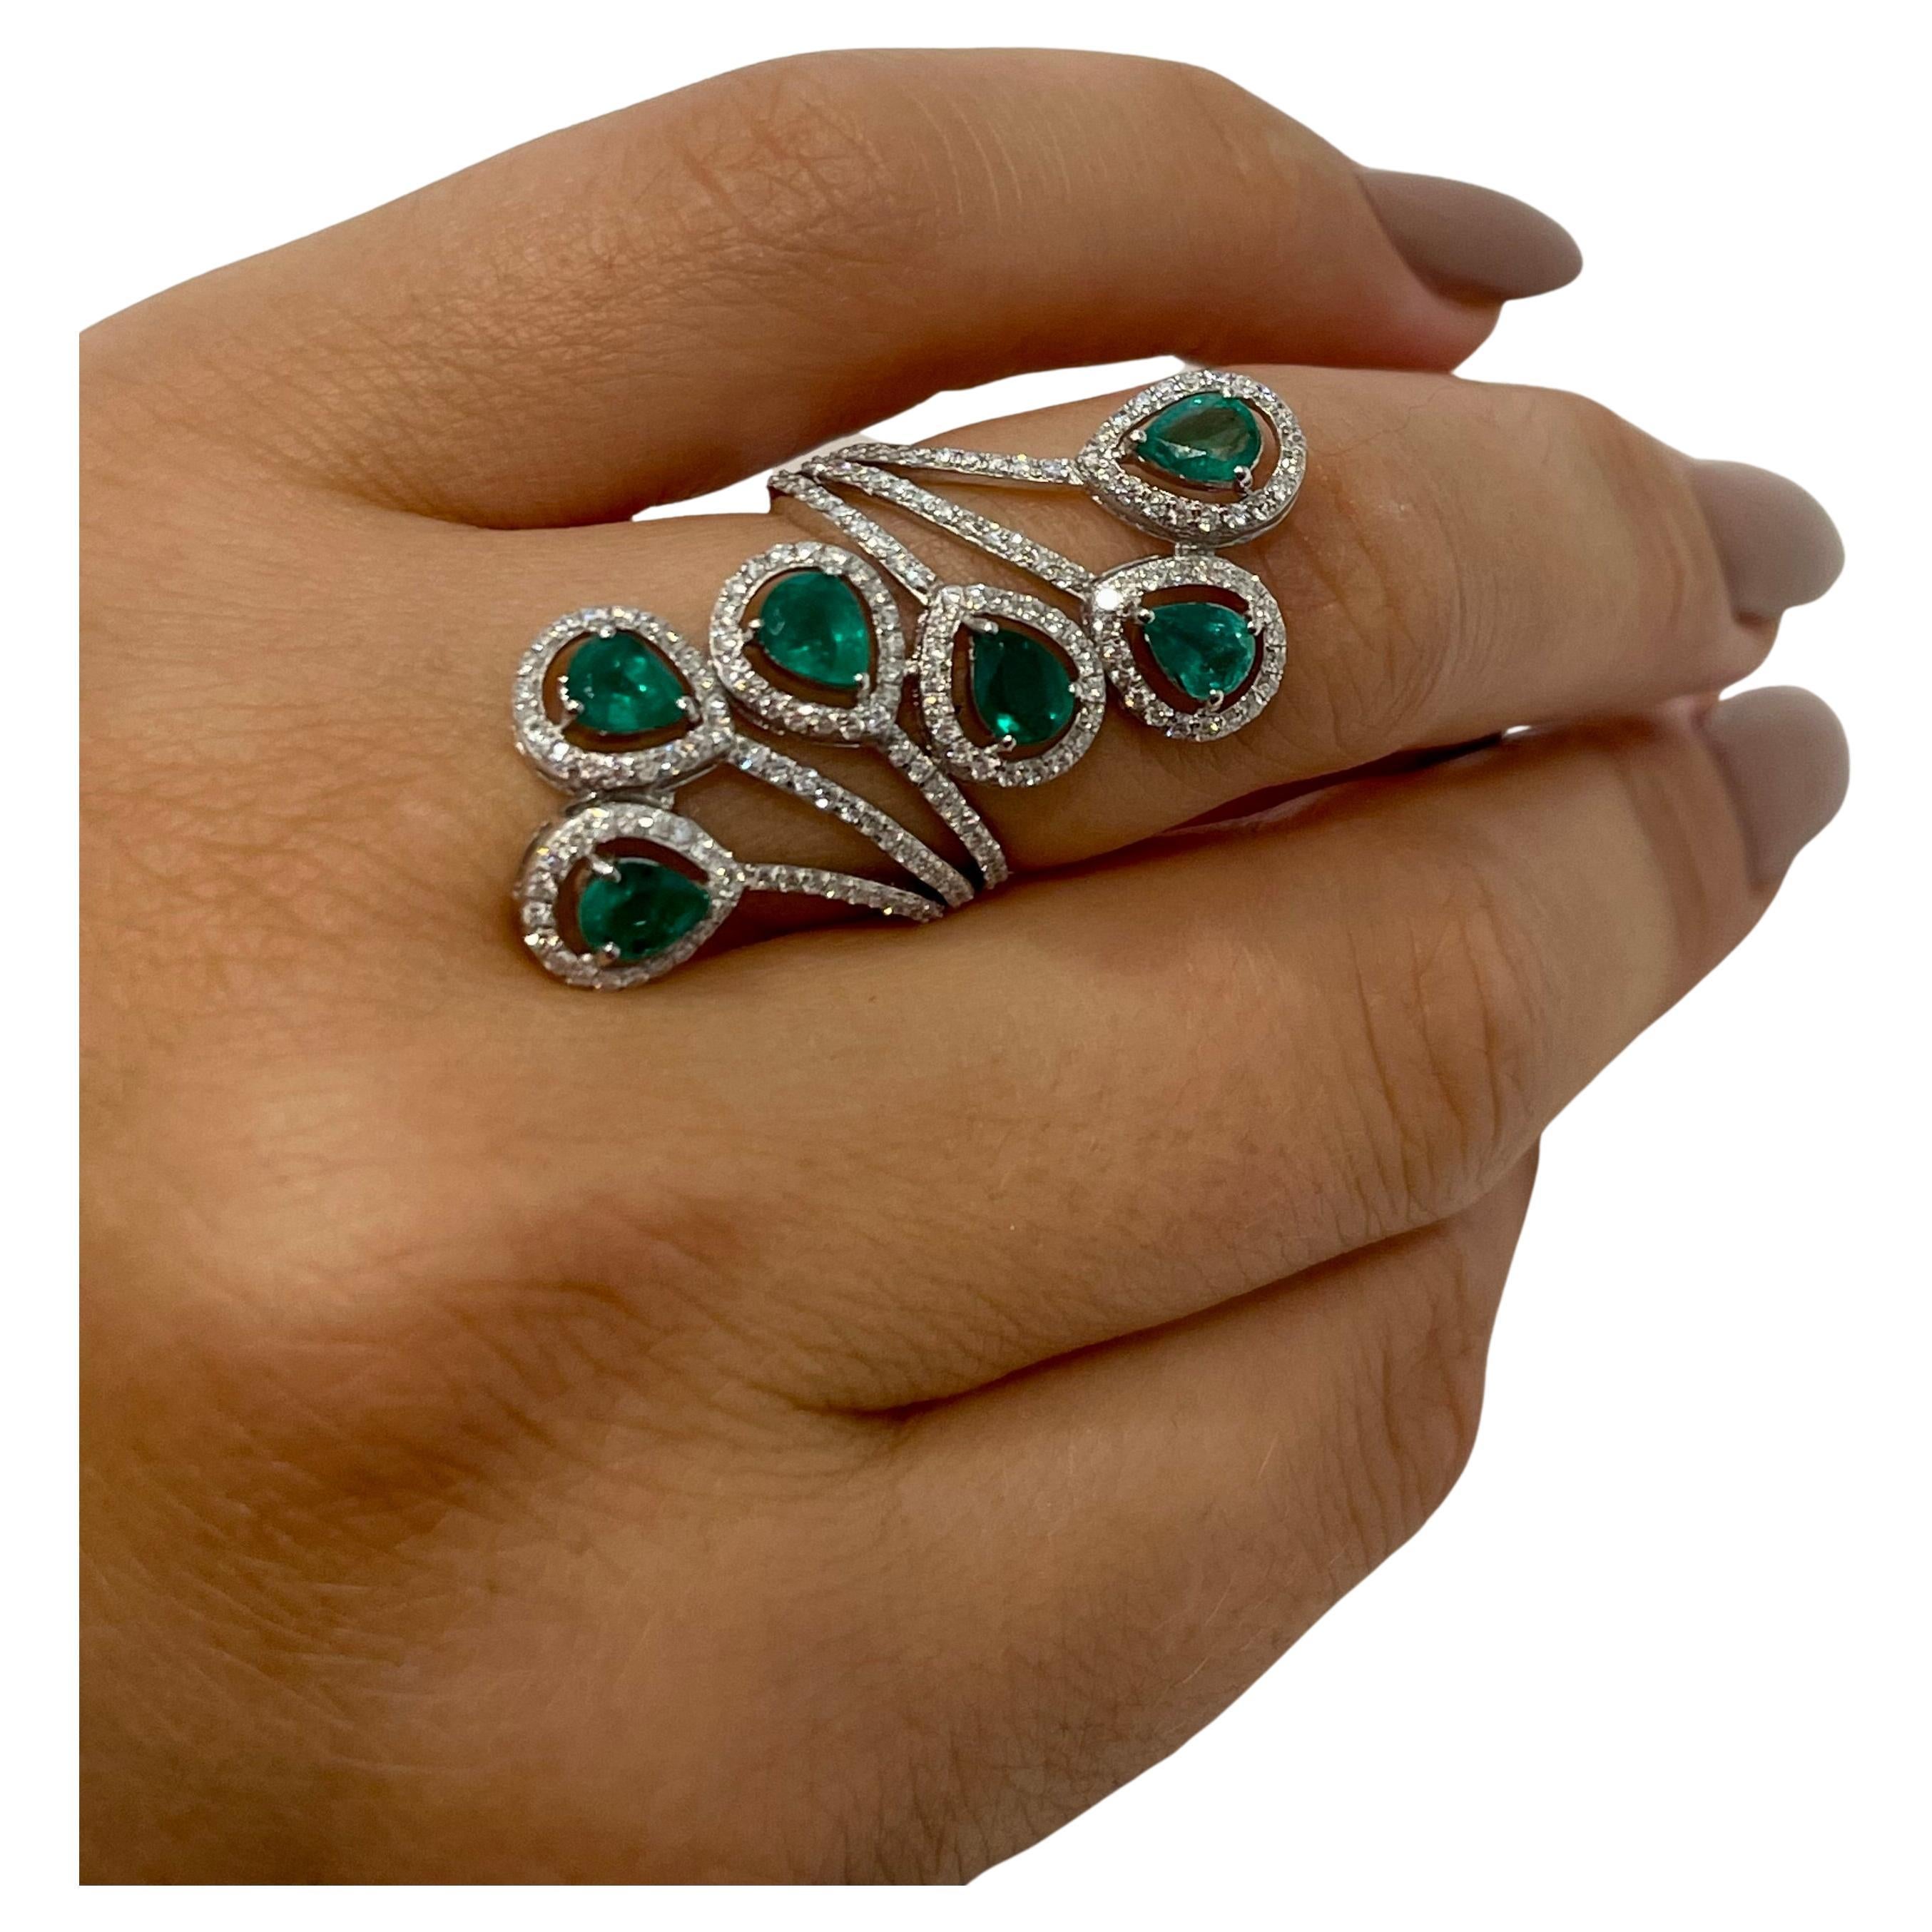 Dies ist ein erstaunlicher Ring mit schönem Design 
es sind 6 birnenförmige natürliche sambische Smaragde von hoher Qualität mit viel Farbe und Glanz.
Ungefähres Gewicht: 3 ct 
Es gibt  mehrere sehr glänzende runde Diamanten im Brillantschliff, die